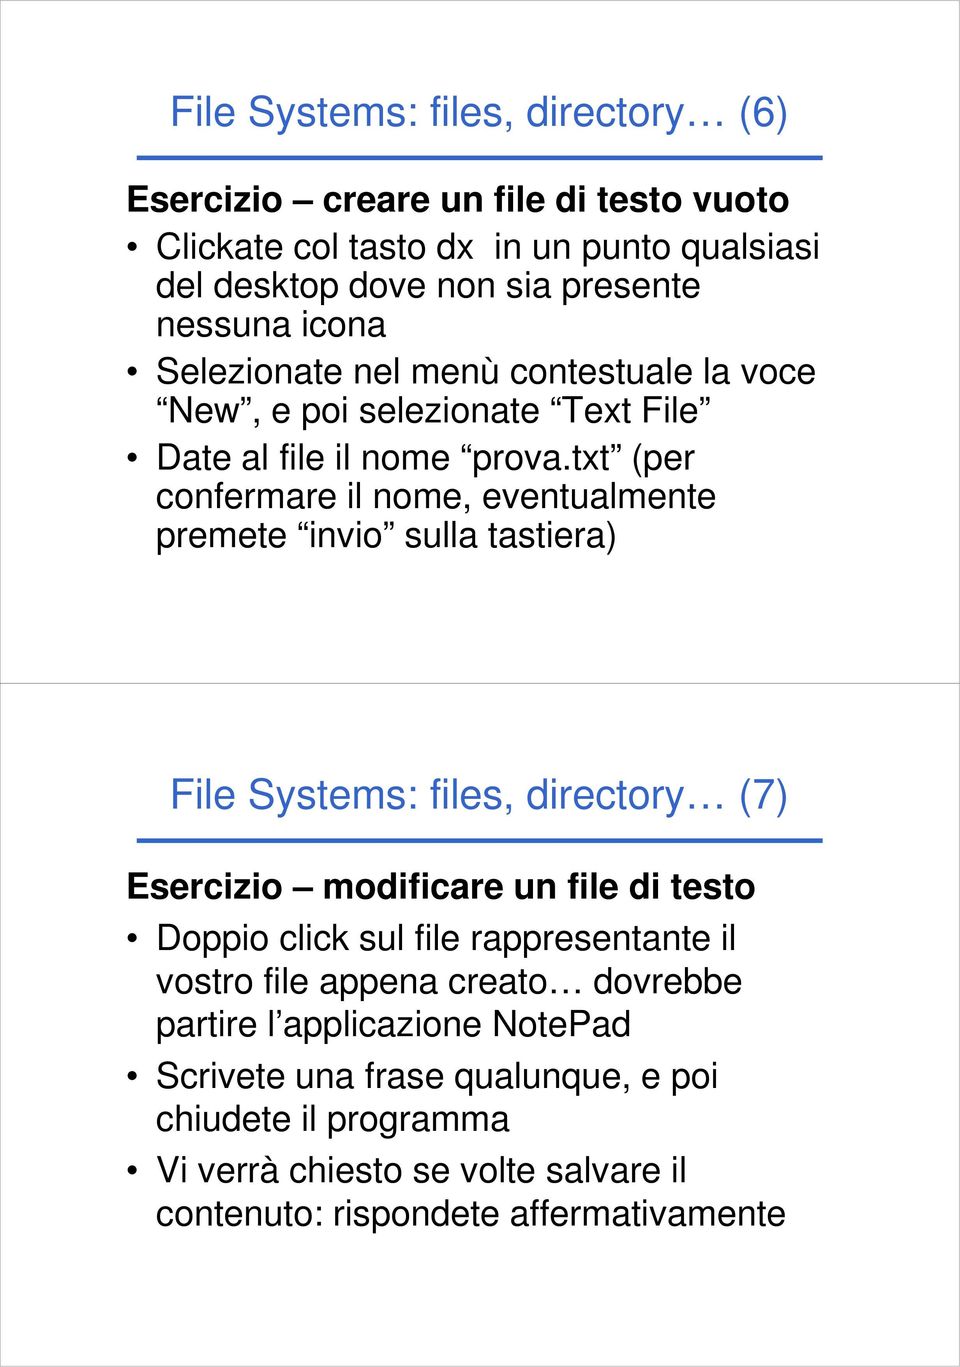 txt (per confermare il nome, eventualmente premete invio sulla tastiera) File Systems: files, directory (7) Esercizio modificare un file di testo Doppio click sul